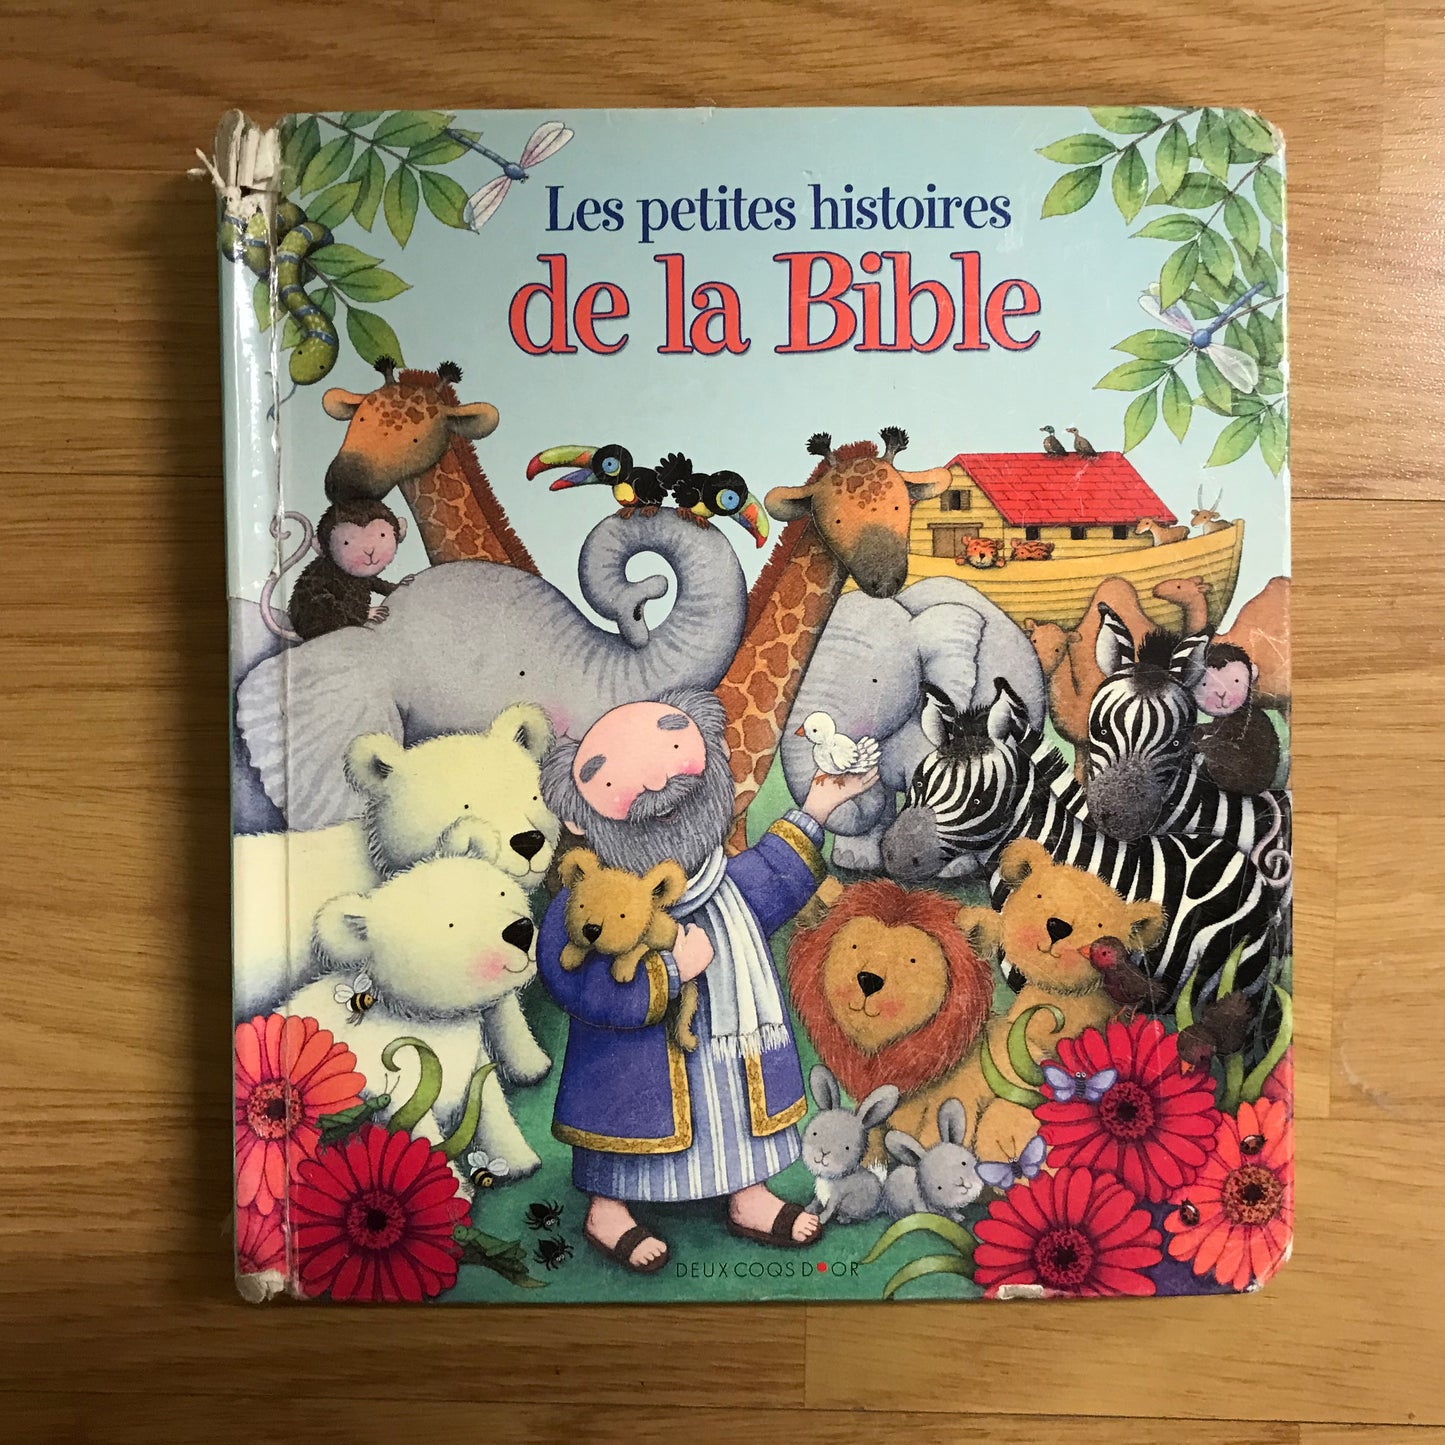 Les petites histoires de la Bible